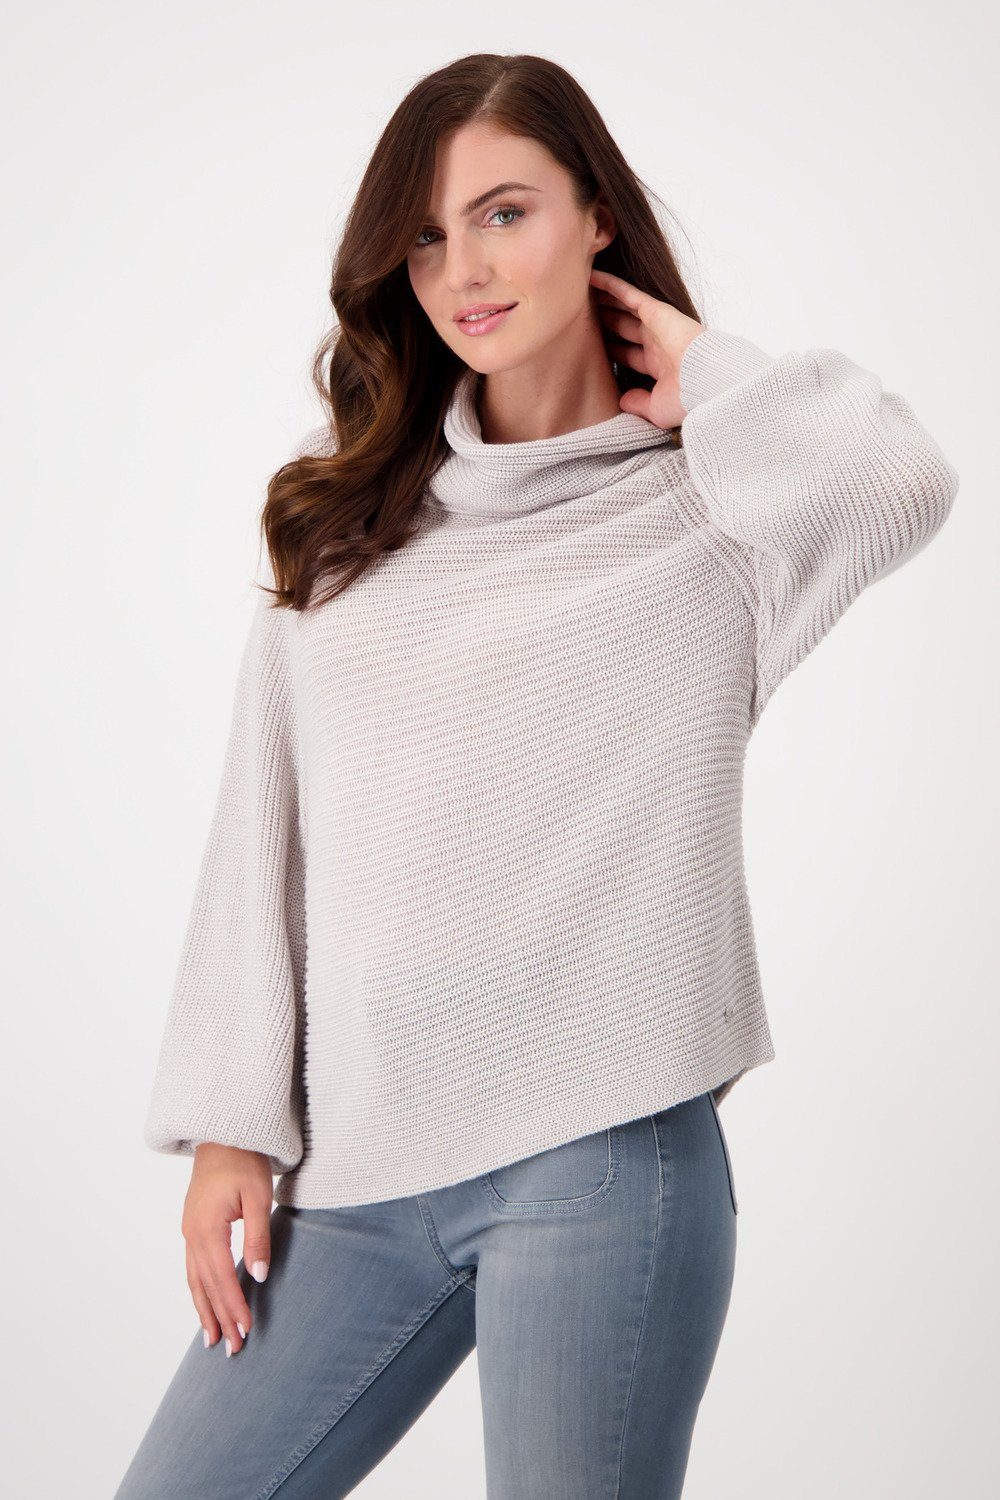 Monari Sweatshirt Pullover, stone